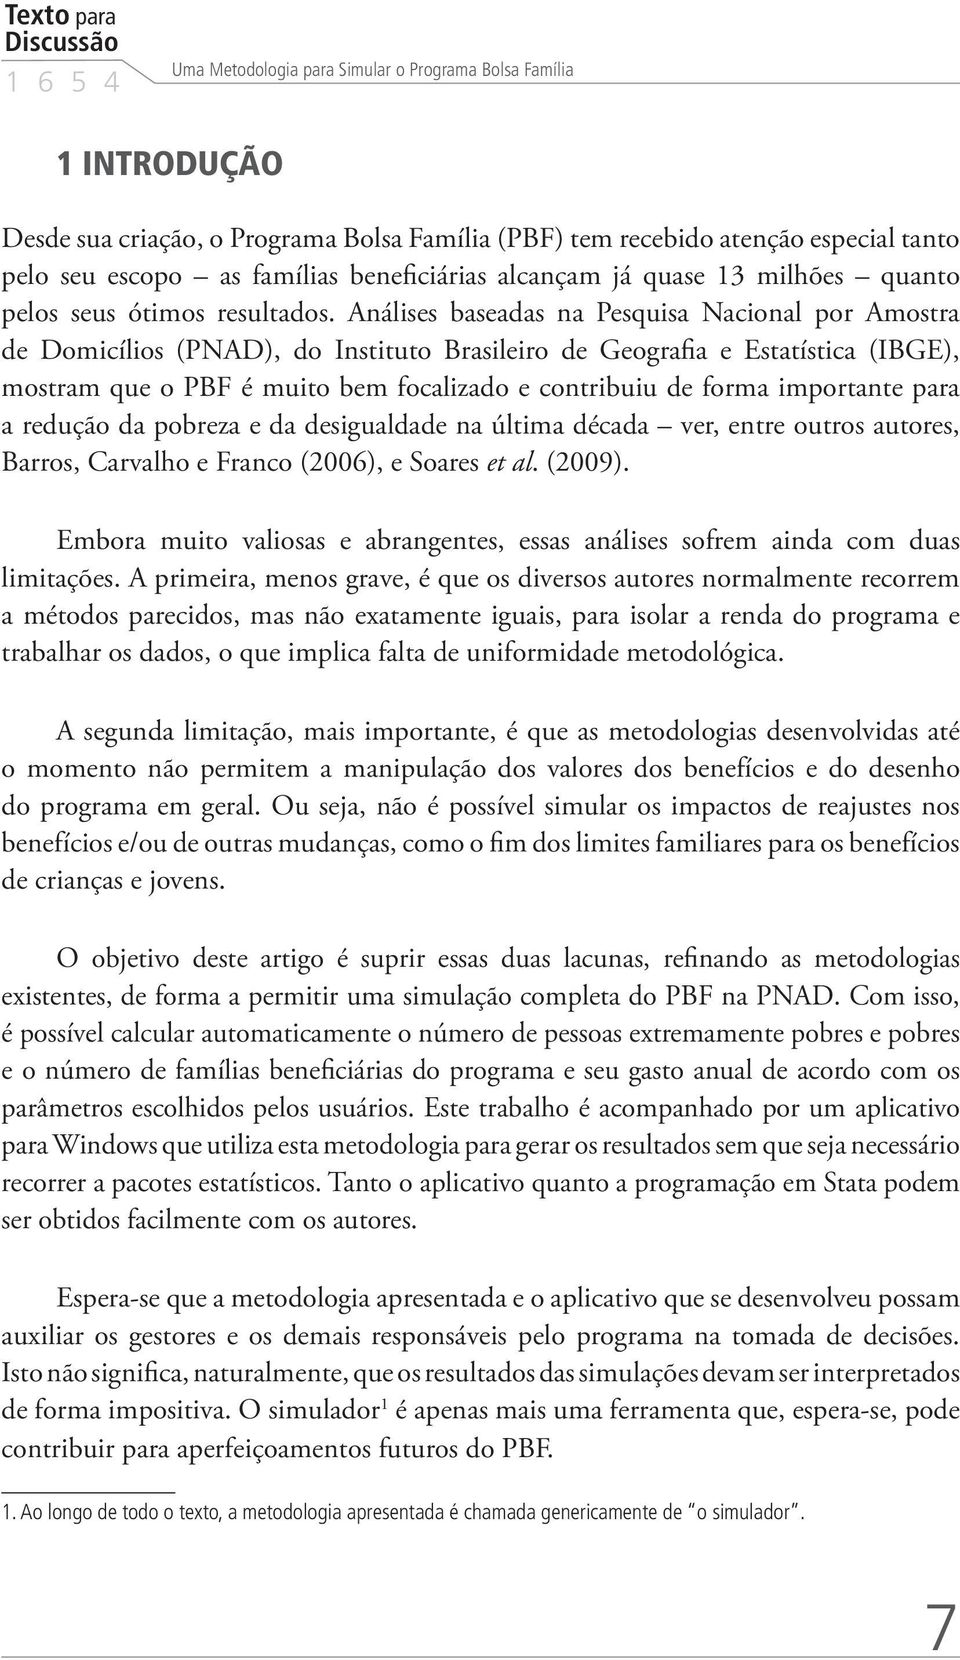 Análises baseadas na Pesquisa Nacional por Amostra de Domicílios (PNAD), do Instituto Brasileiro de Geografia e Estatística (IBGE), mostram que o PBF é muito bem focalizado e contribuiu de forma